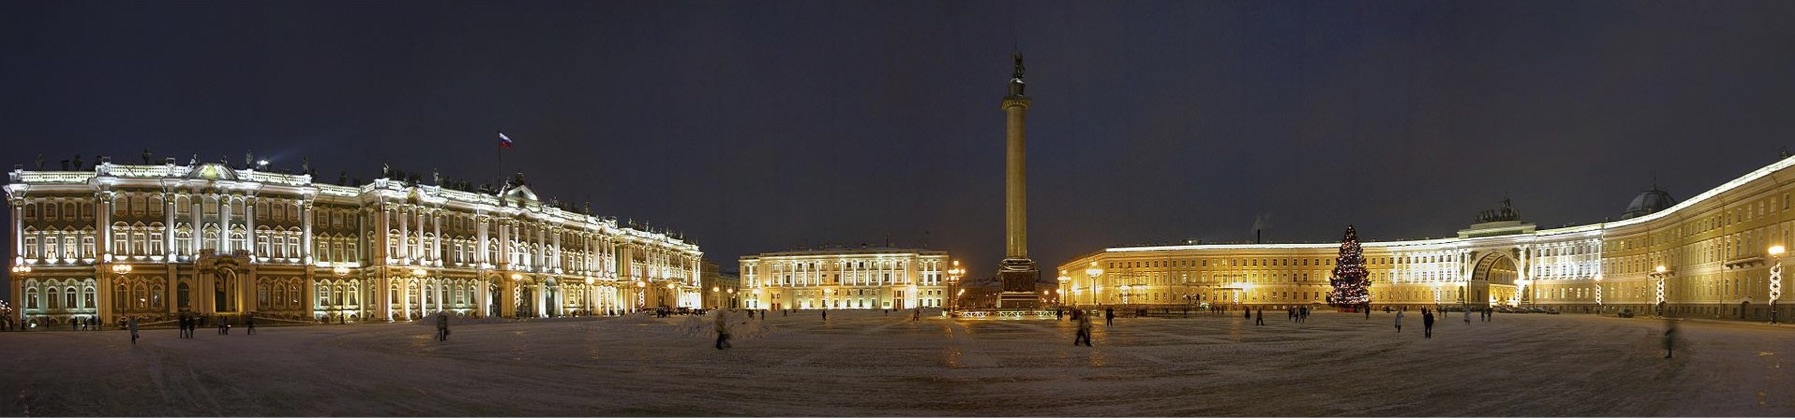 Place duPalais nuit Saint Petersbourg